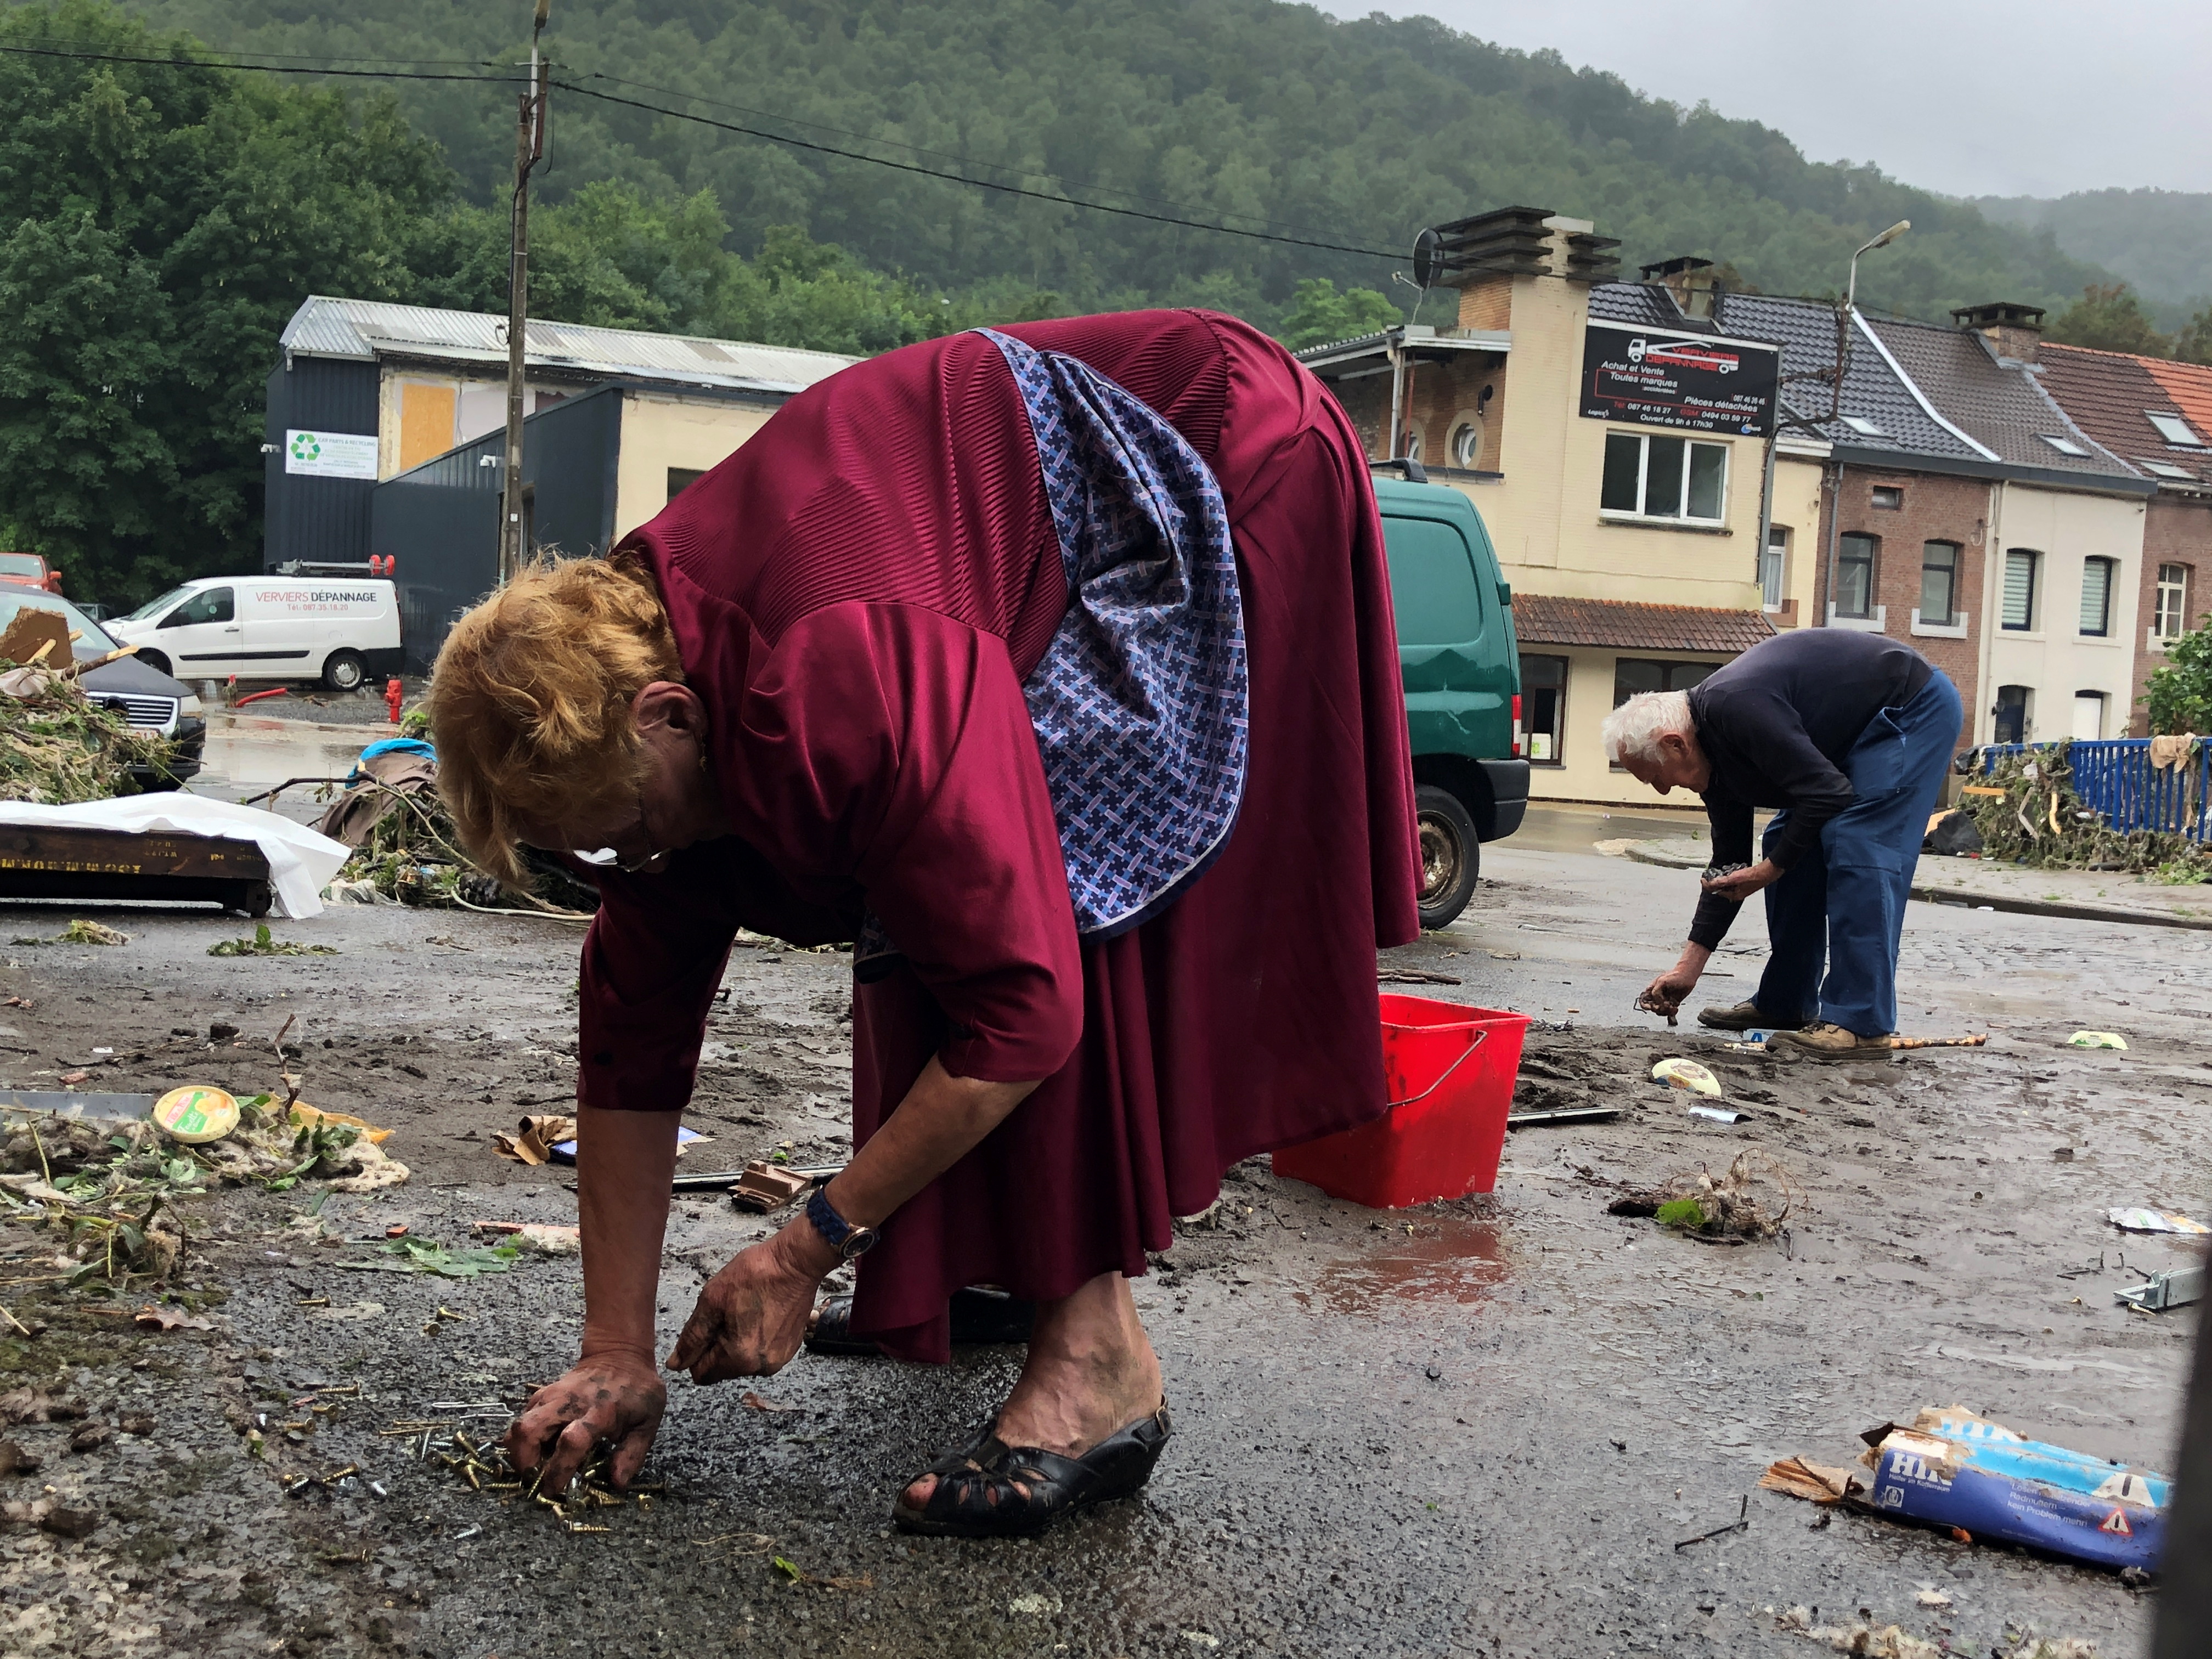 Personas limpian una calle afectada por las inundaciones en Pepinster, Bélgica